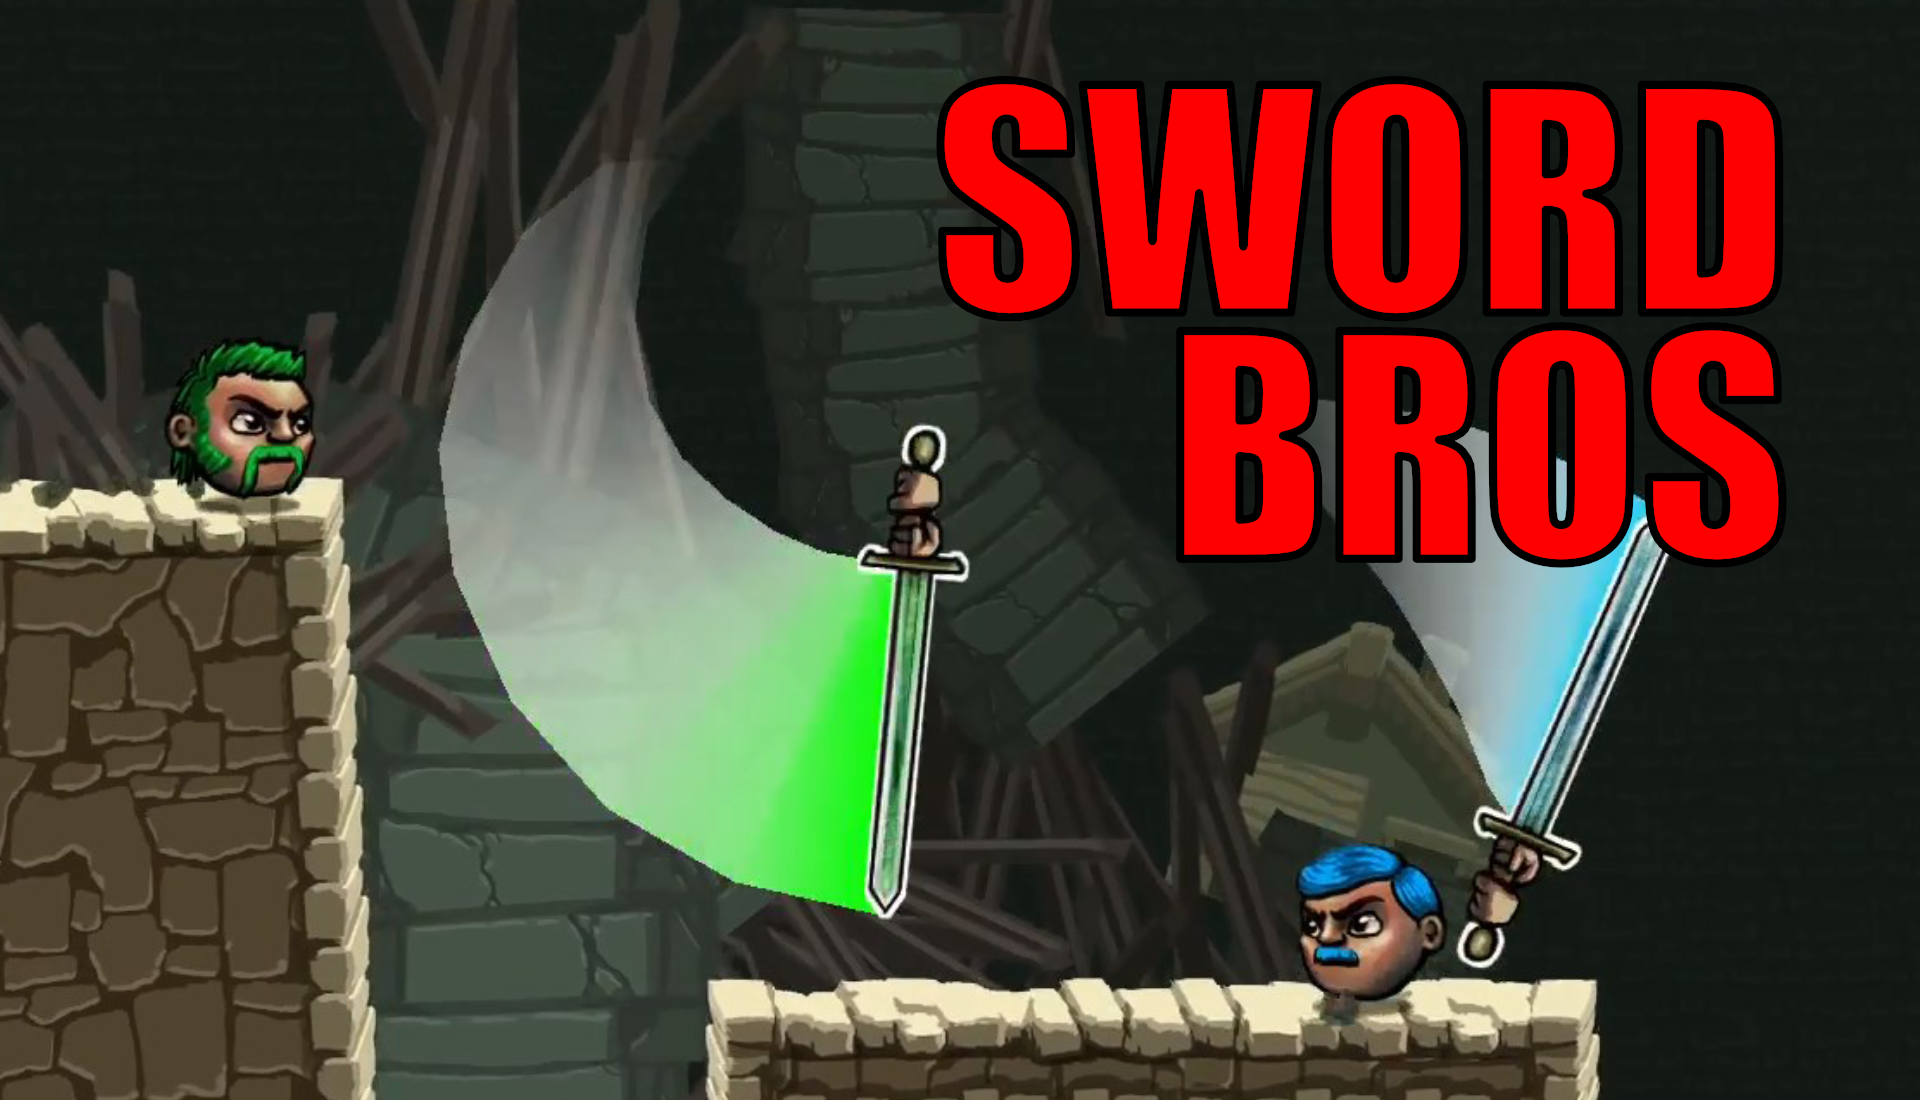 Sword Bros